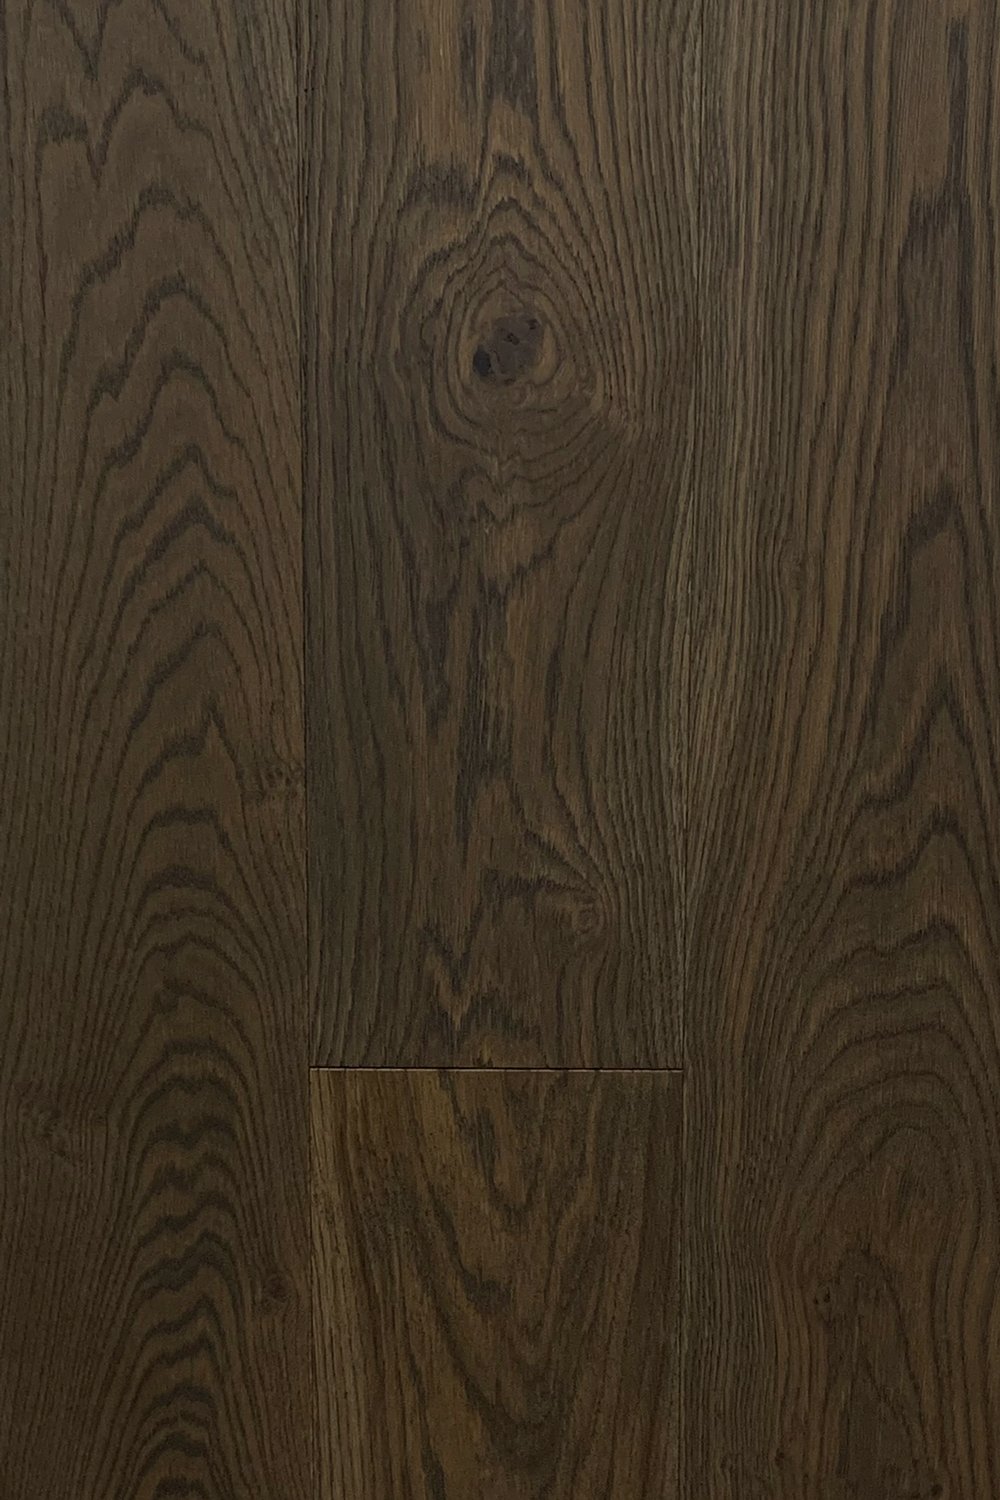 Beja European Oak Engineered Hardwood Flooring